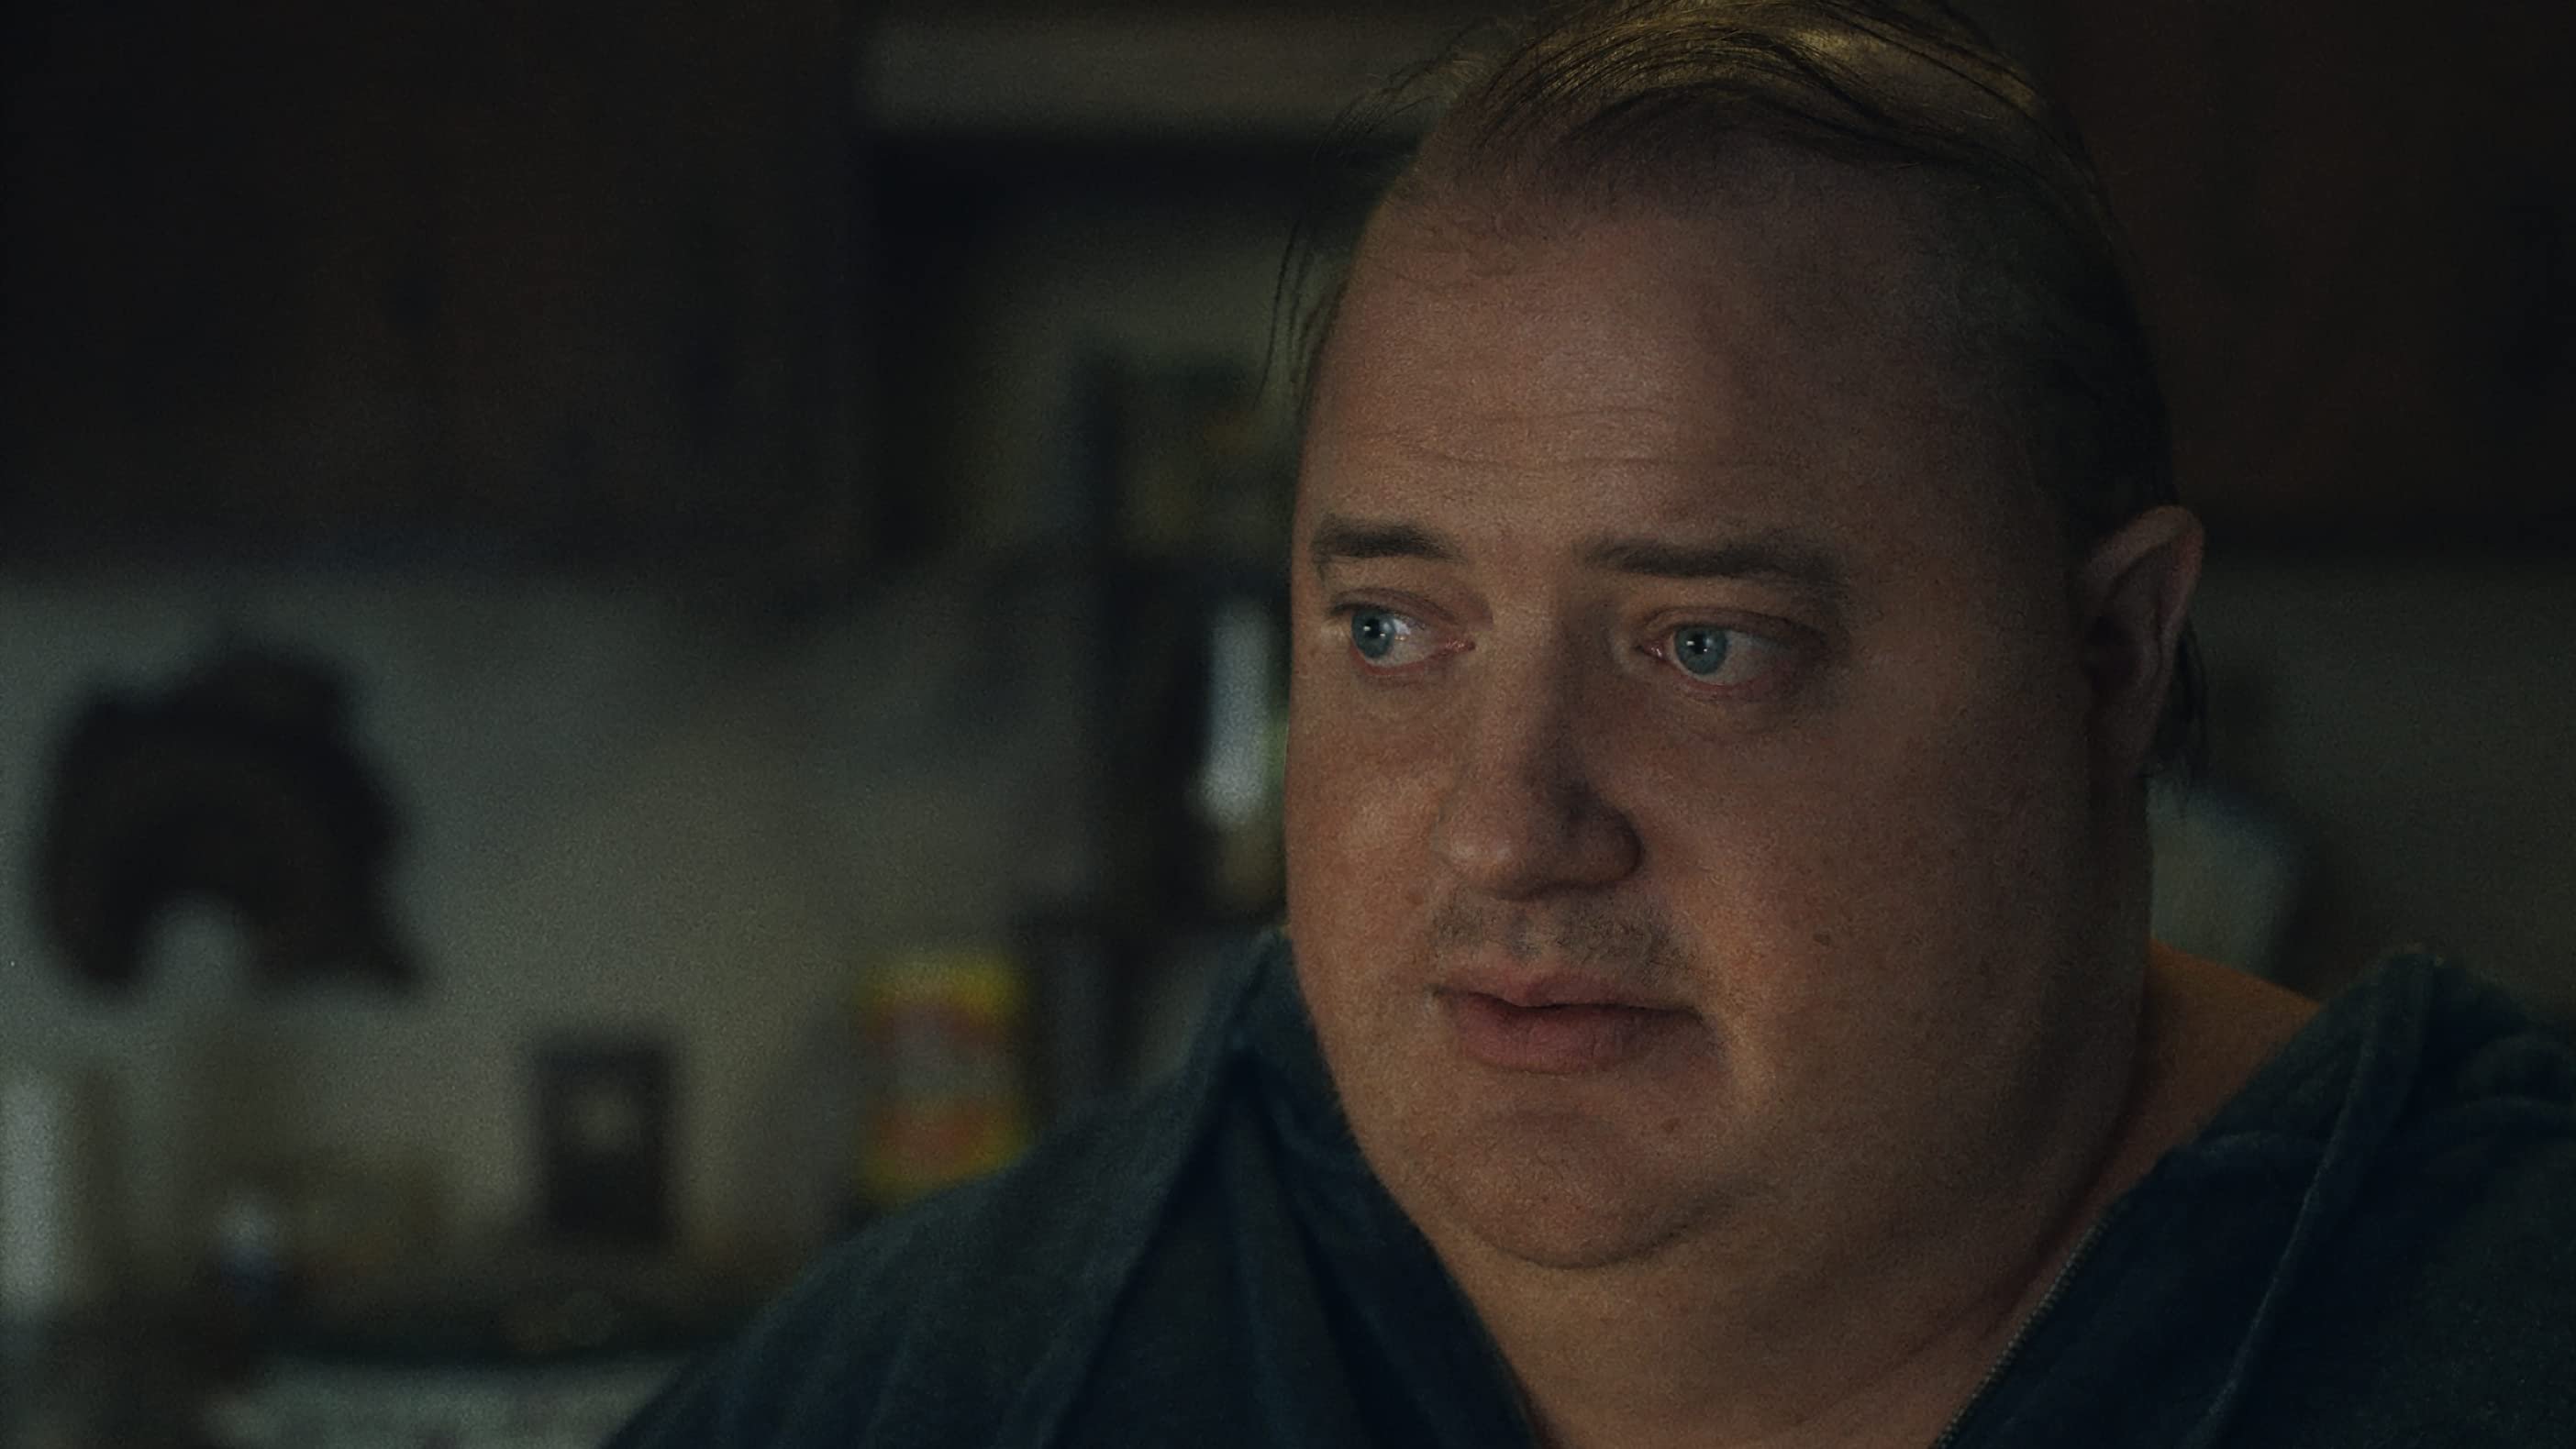 Brendan Fraser vive um personagem com obesidade mórbida em The Whale, que tem reunido diversas críticas.